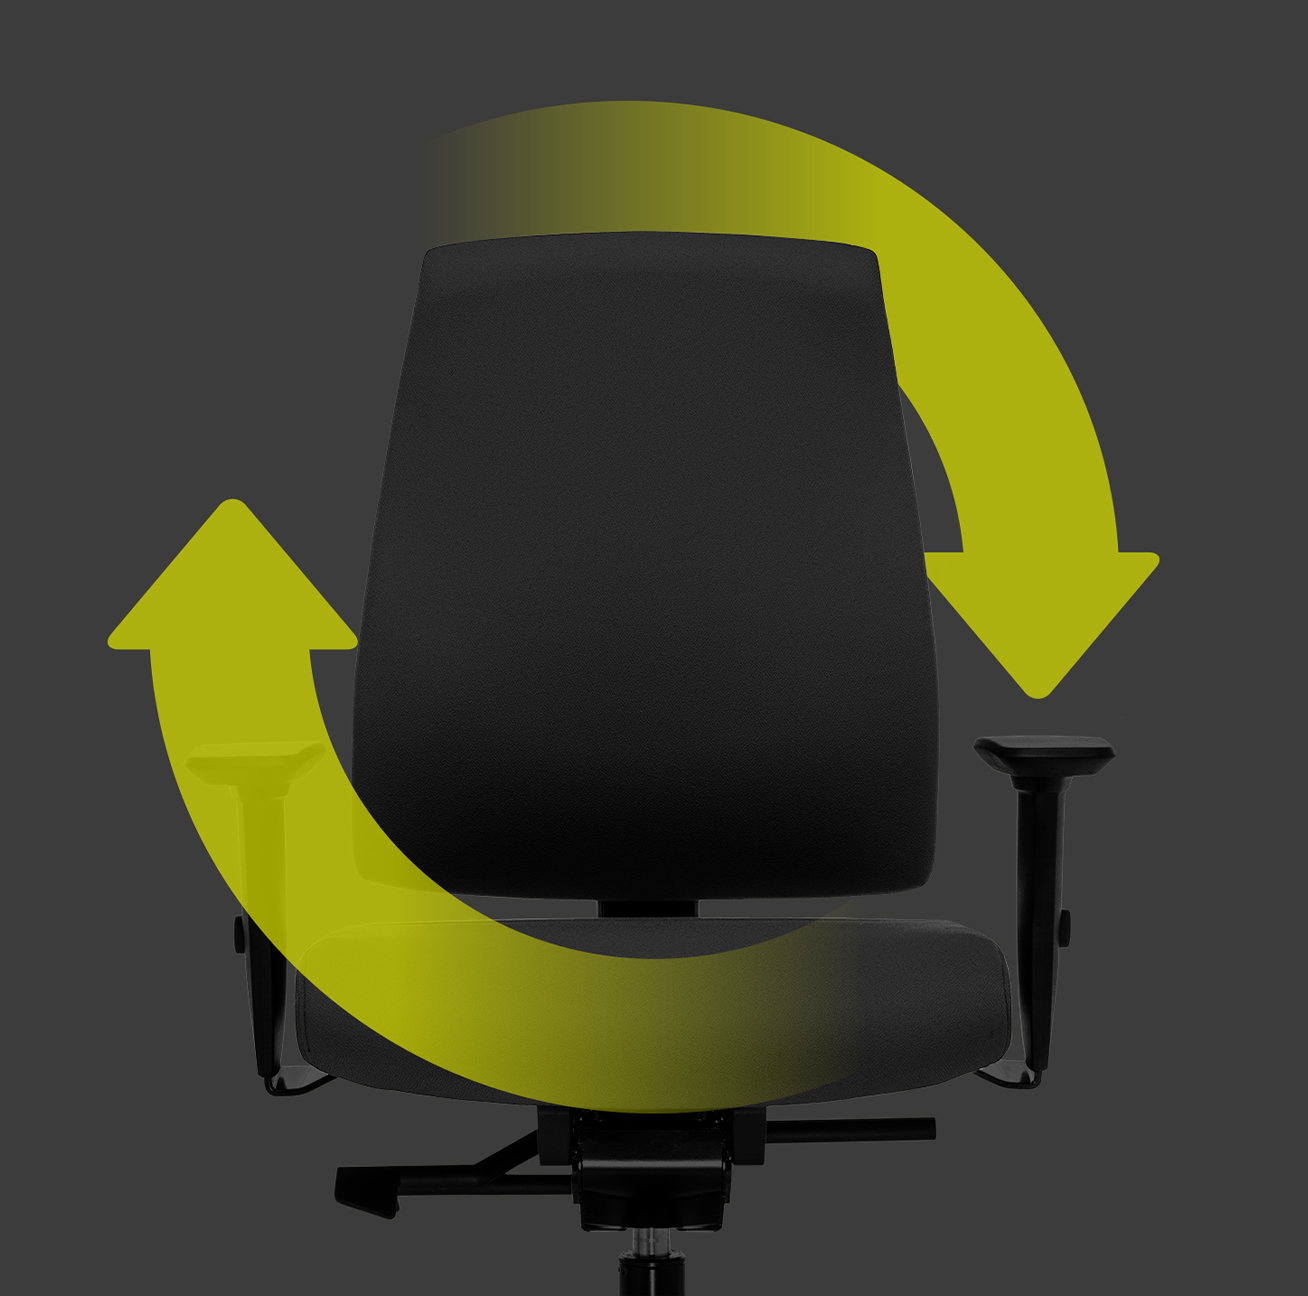 Den ergonomiske kontorstol Goal set fra siden med sort polsterryg, sort sædebetræk, sorte T-armlæn og plastdele i sort (bl.a. fodkryds og søjlefunktion) med to grønne pile, der danner en cirkel omkring stolen. Det henviser til stolens bæredygtighed og genanvendelighed. | by Hans-Georg Piorek